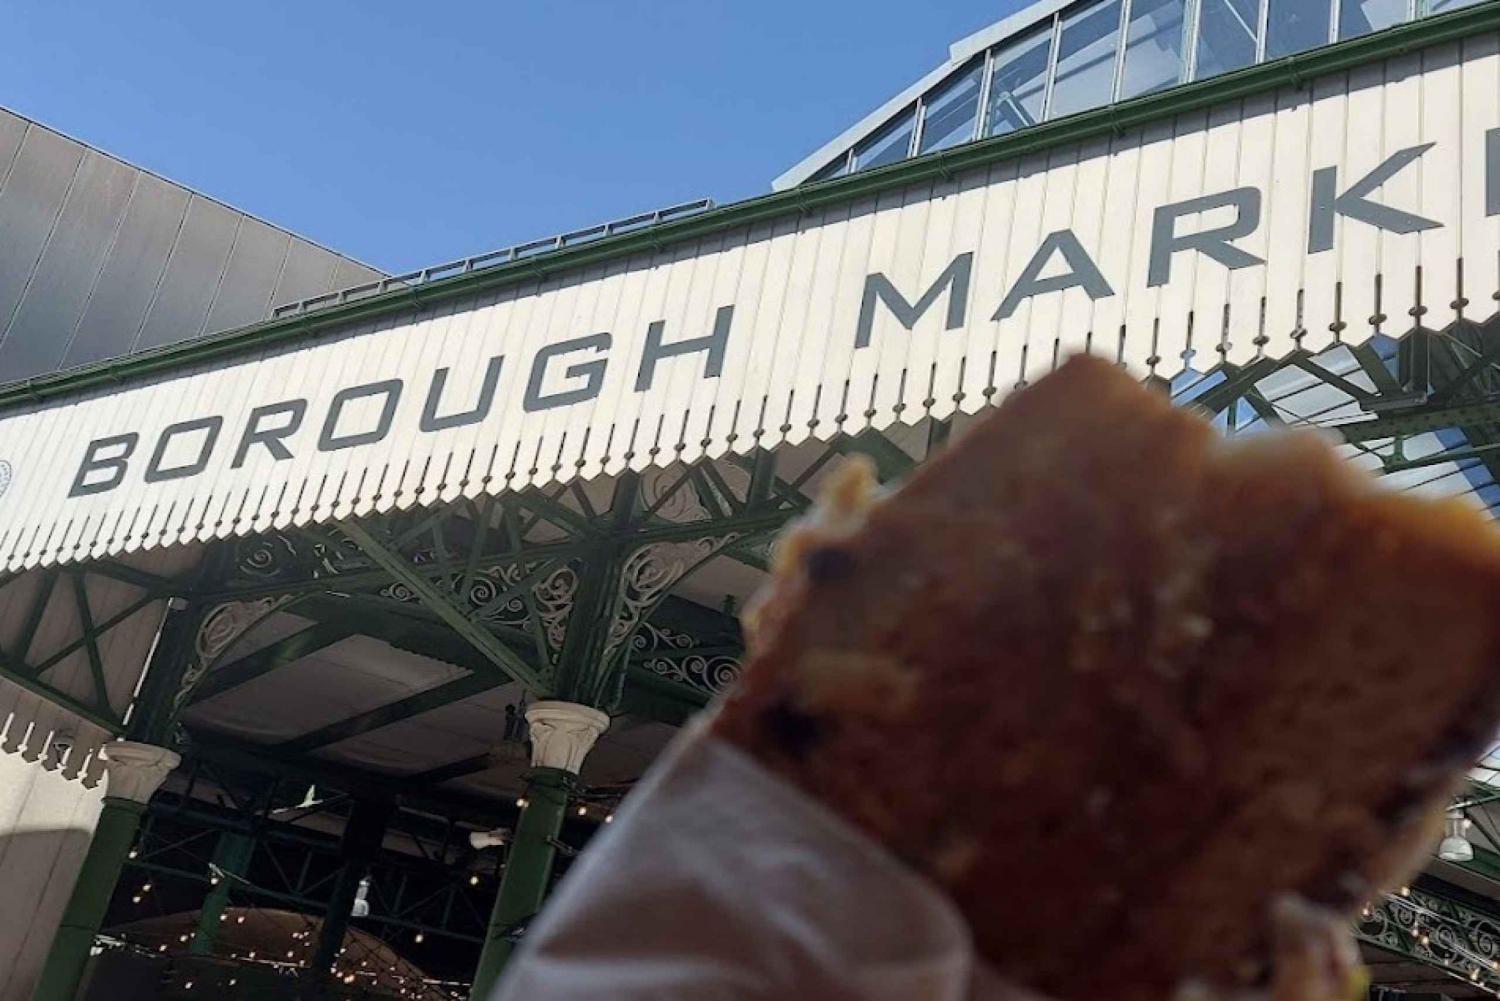 Londyn: Borough Market Wycieczka kulinarna z przewodnikiem